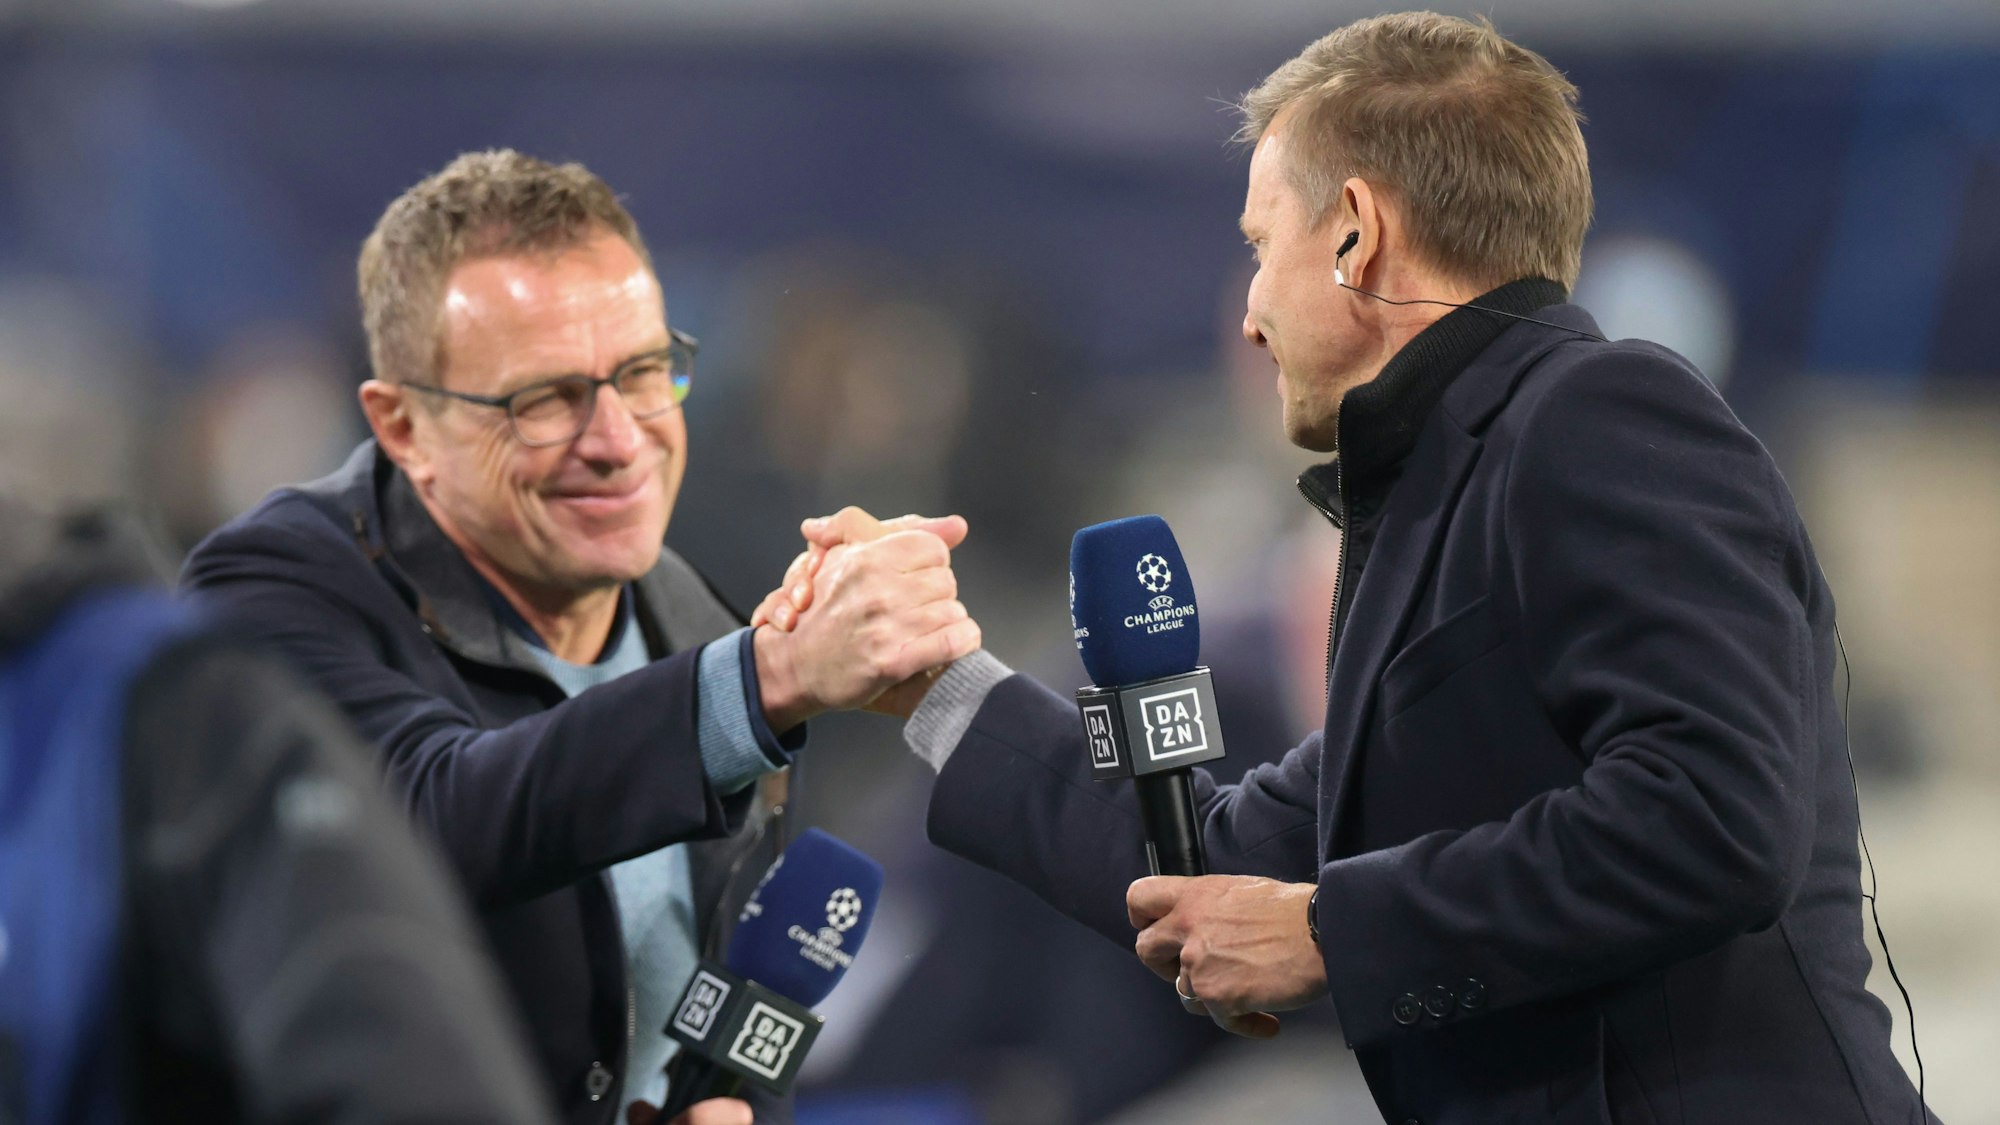 Leipzigs Trainer Jesse Marsch (r) und Leipzigs ehemaliger Trainer Ralf Rangnick schütteln nach einem Interview die Hand.